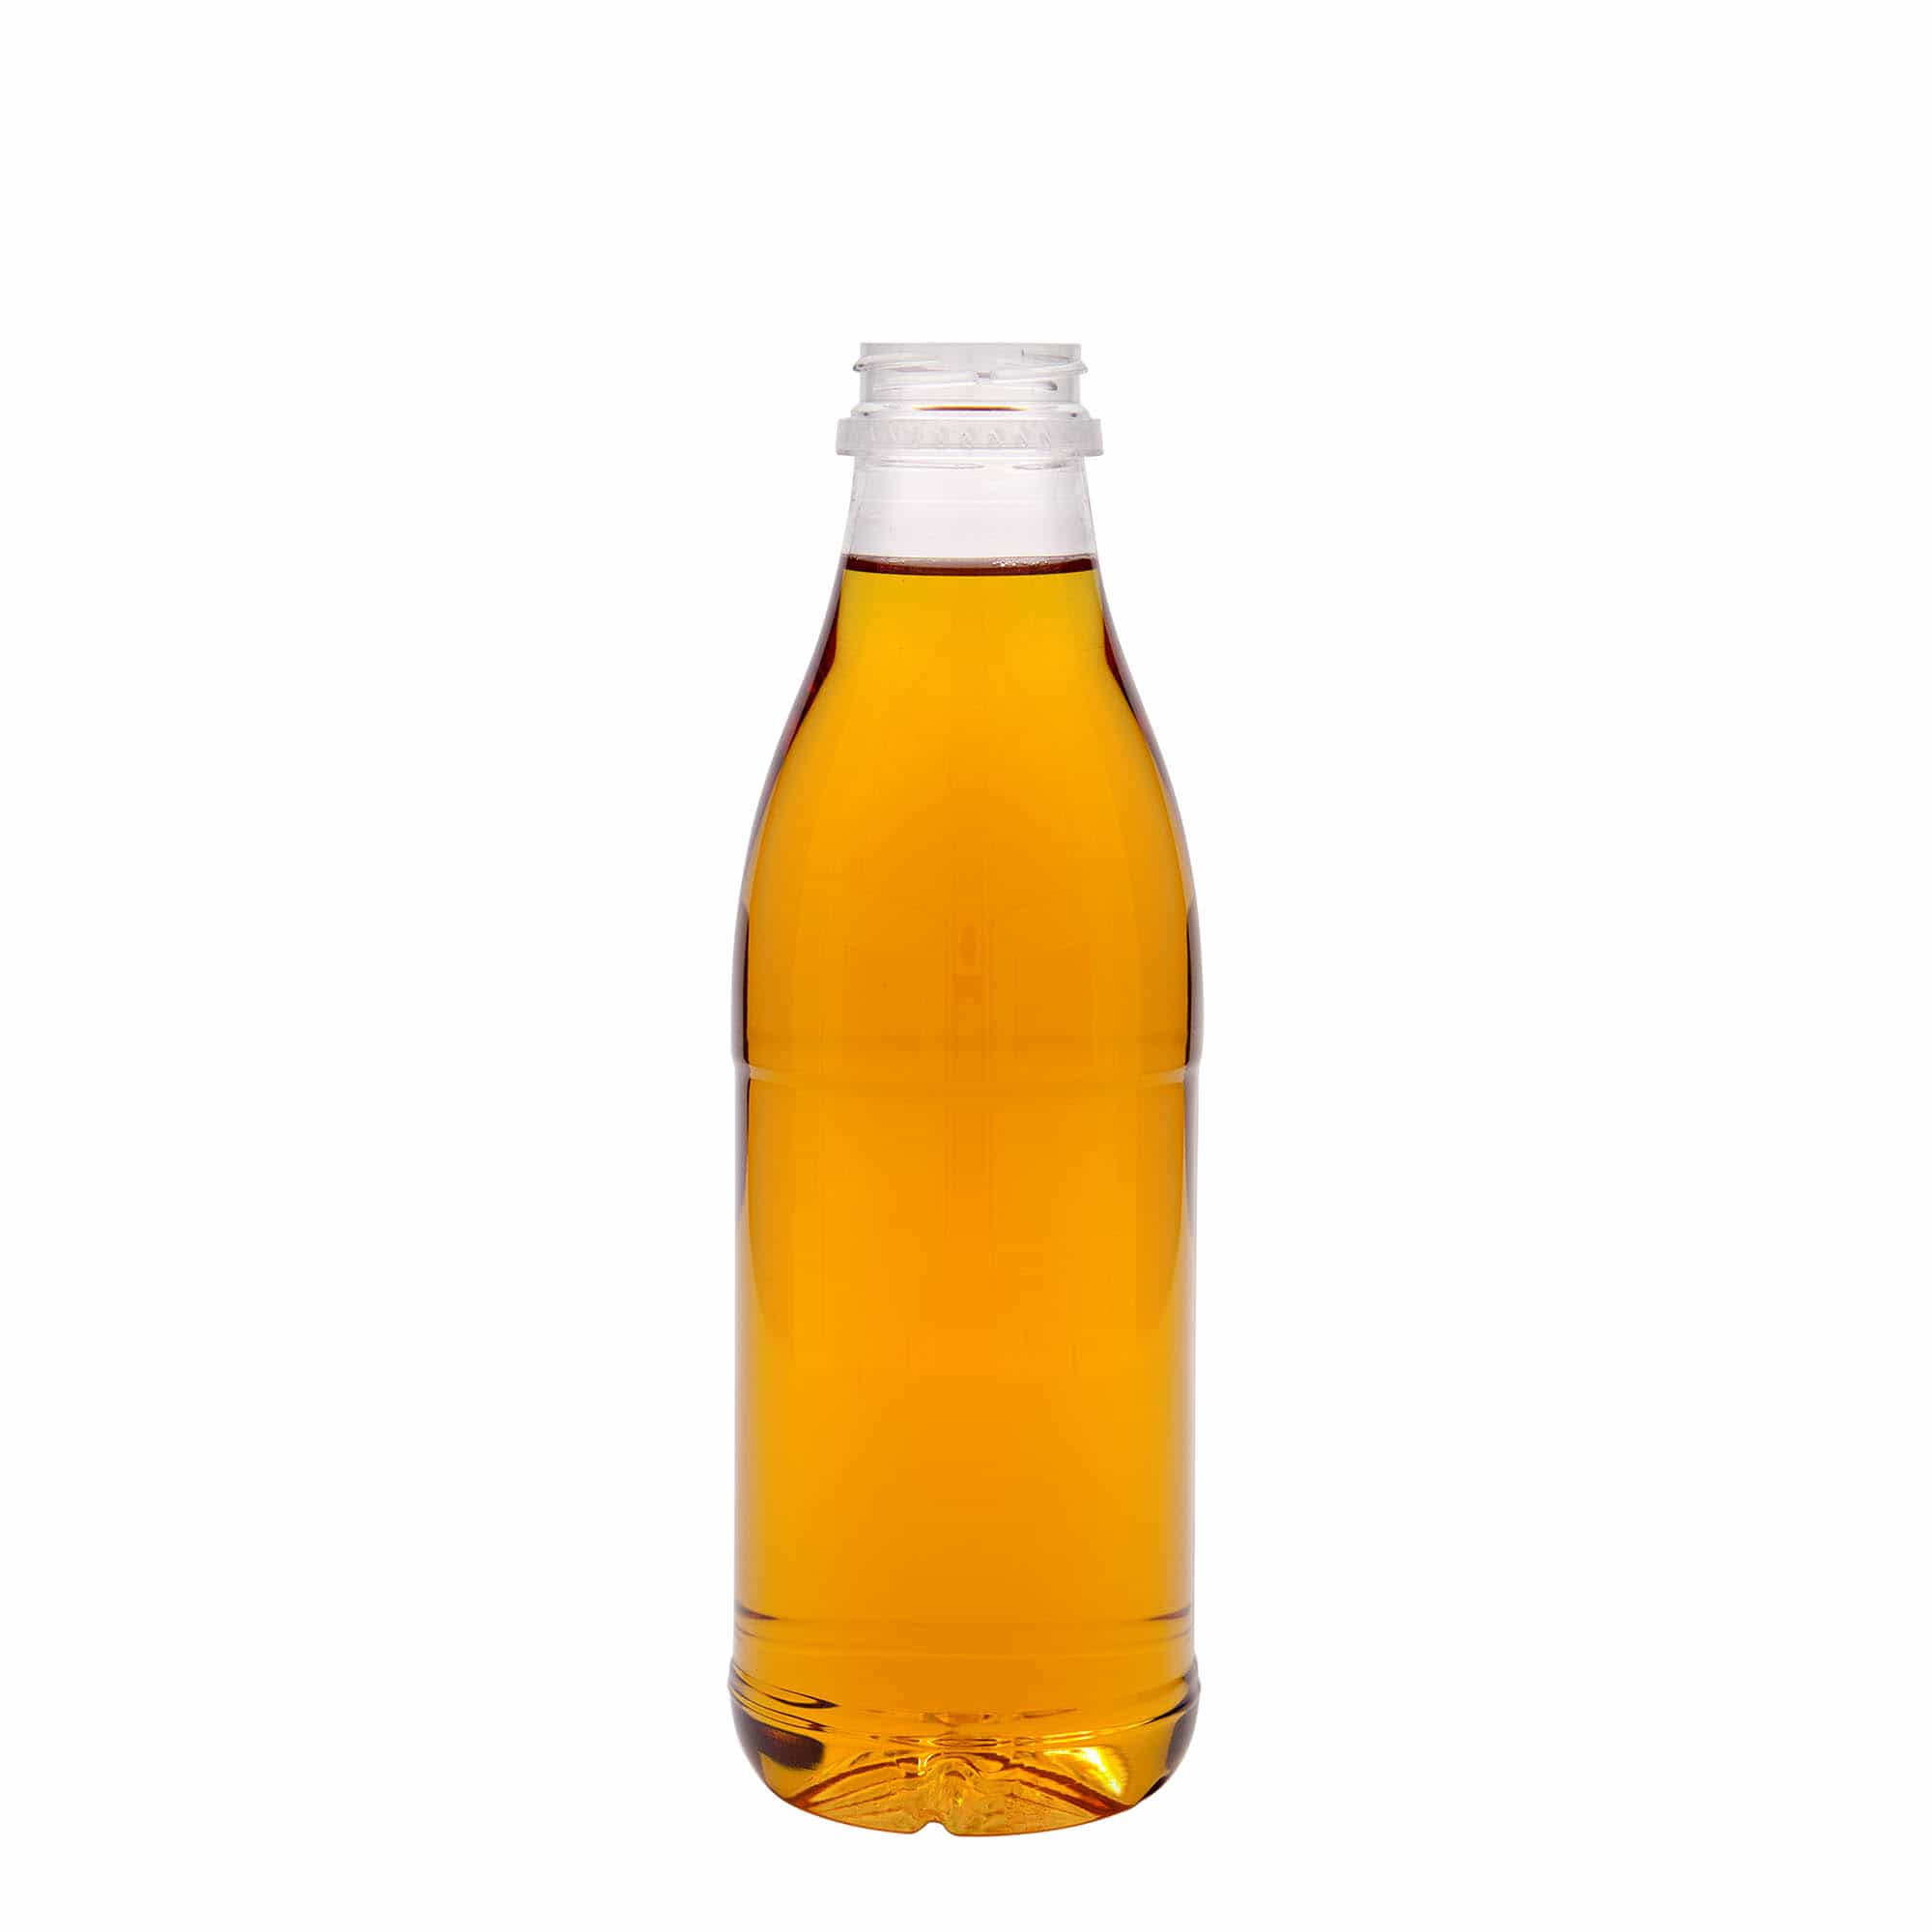 750 ml PET-flaska 'Milk and Juice', plast, mynning: 38 mm